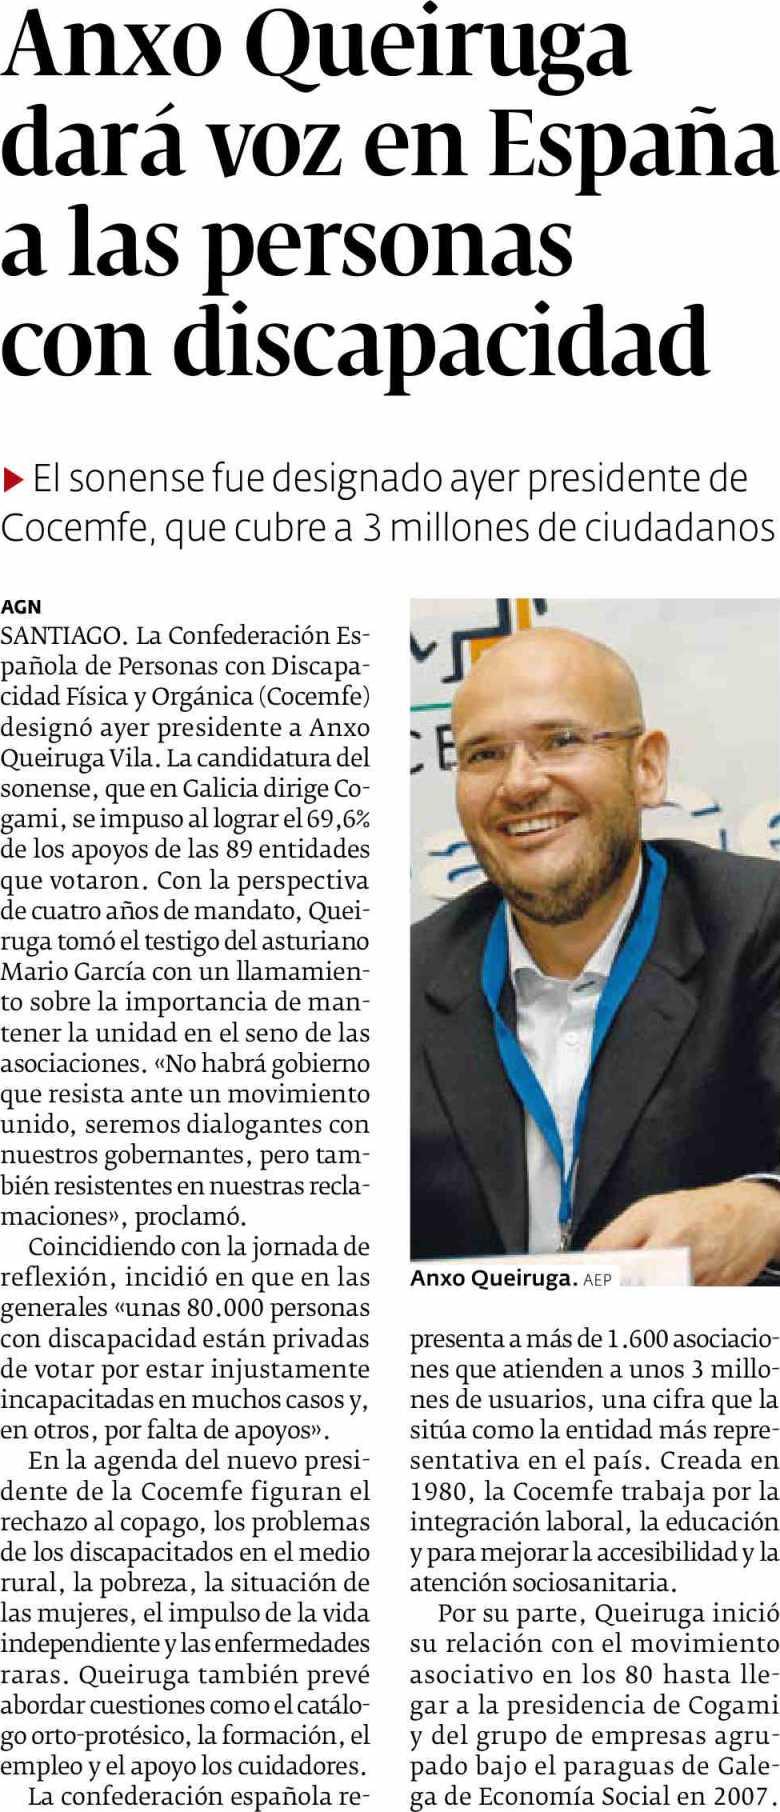 El Progreso Lugo Prensa: Tirada: Difusión: 26/06/16 Diaria 15.125 Ejemplares 12.